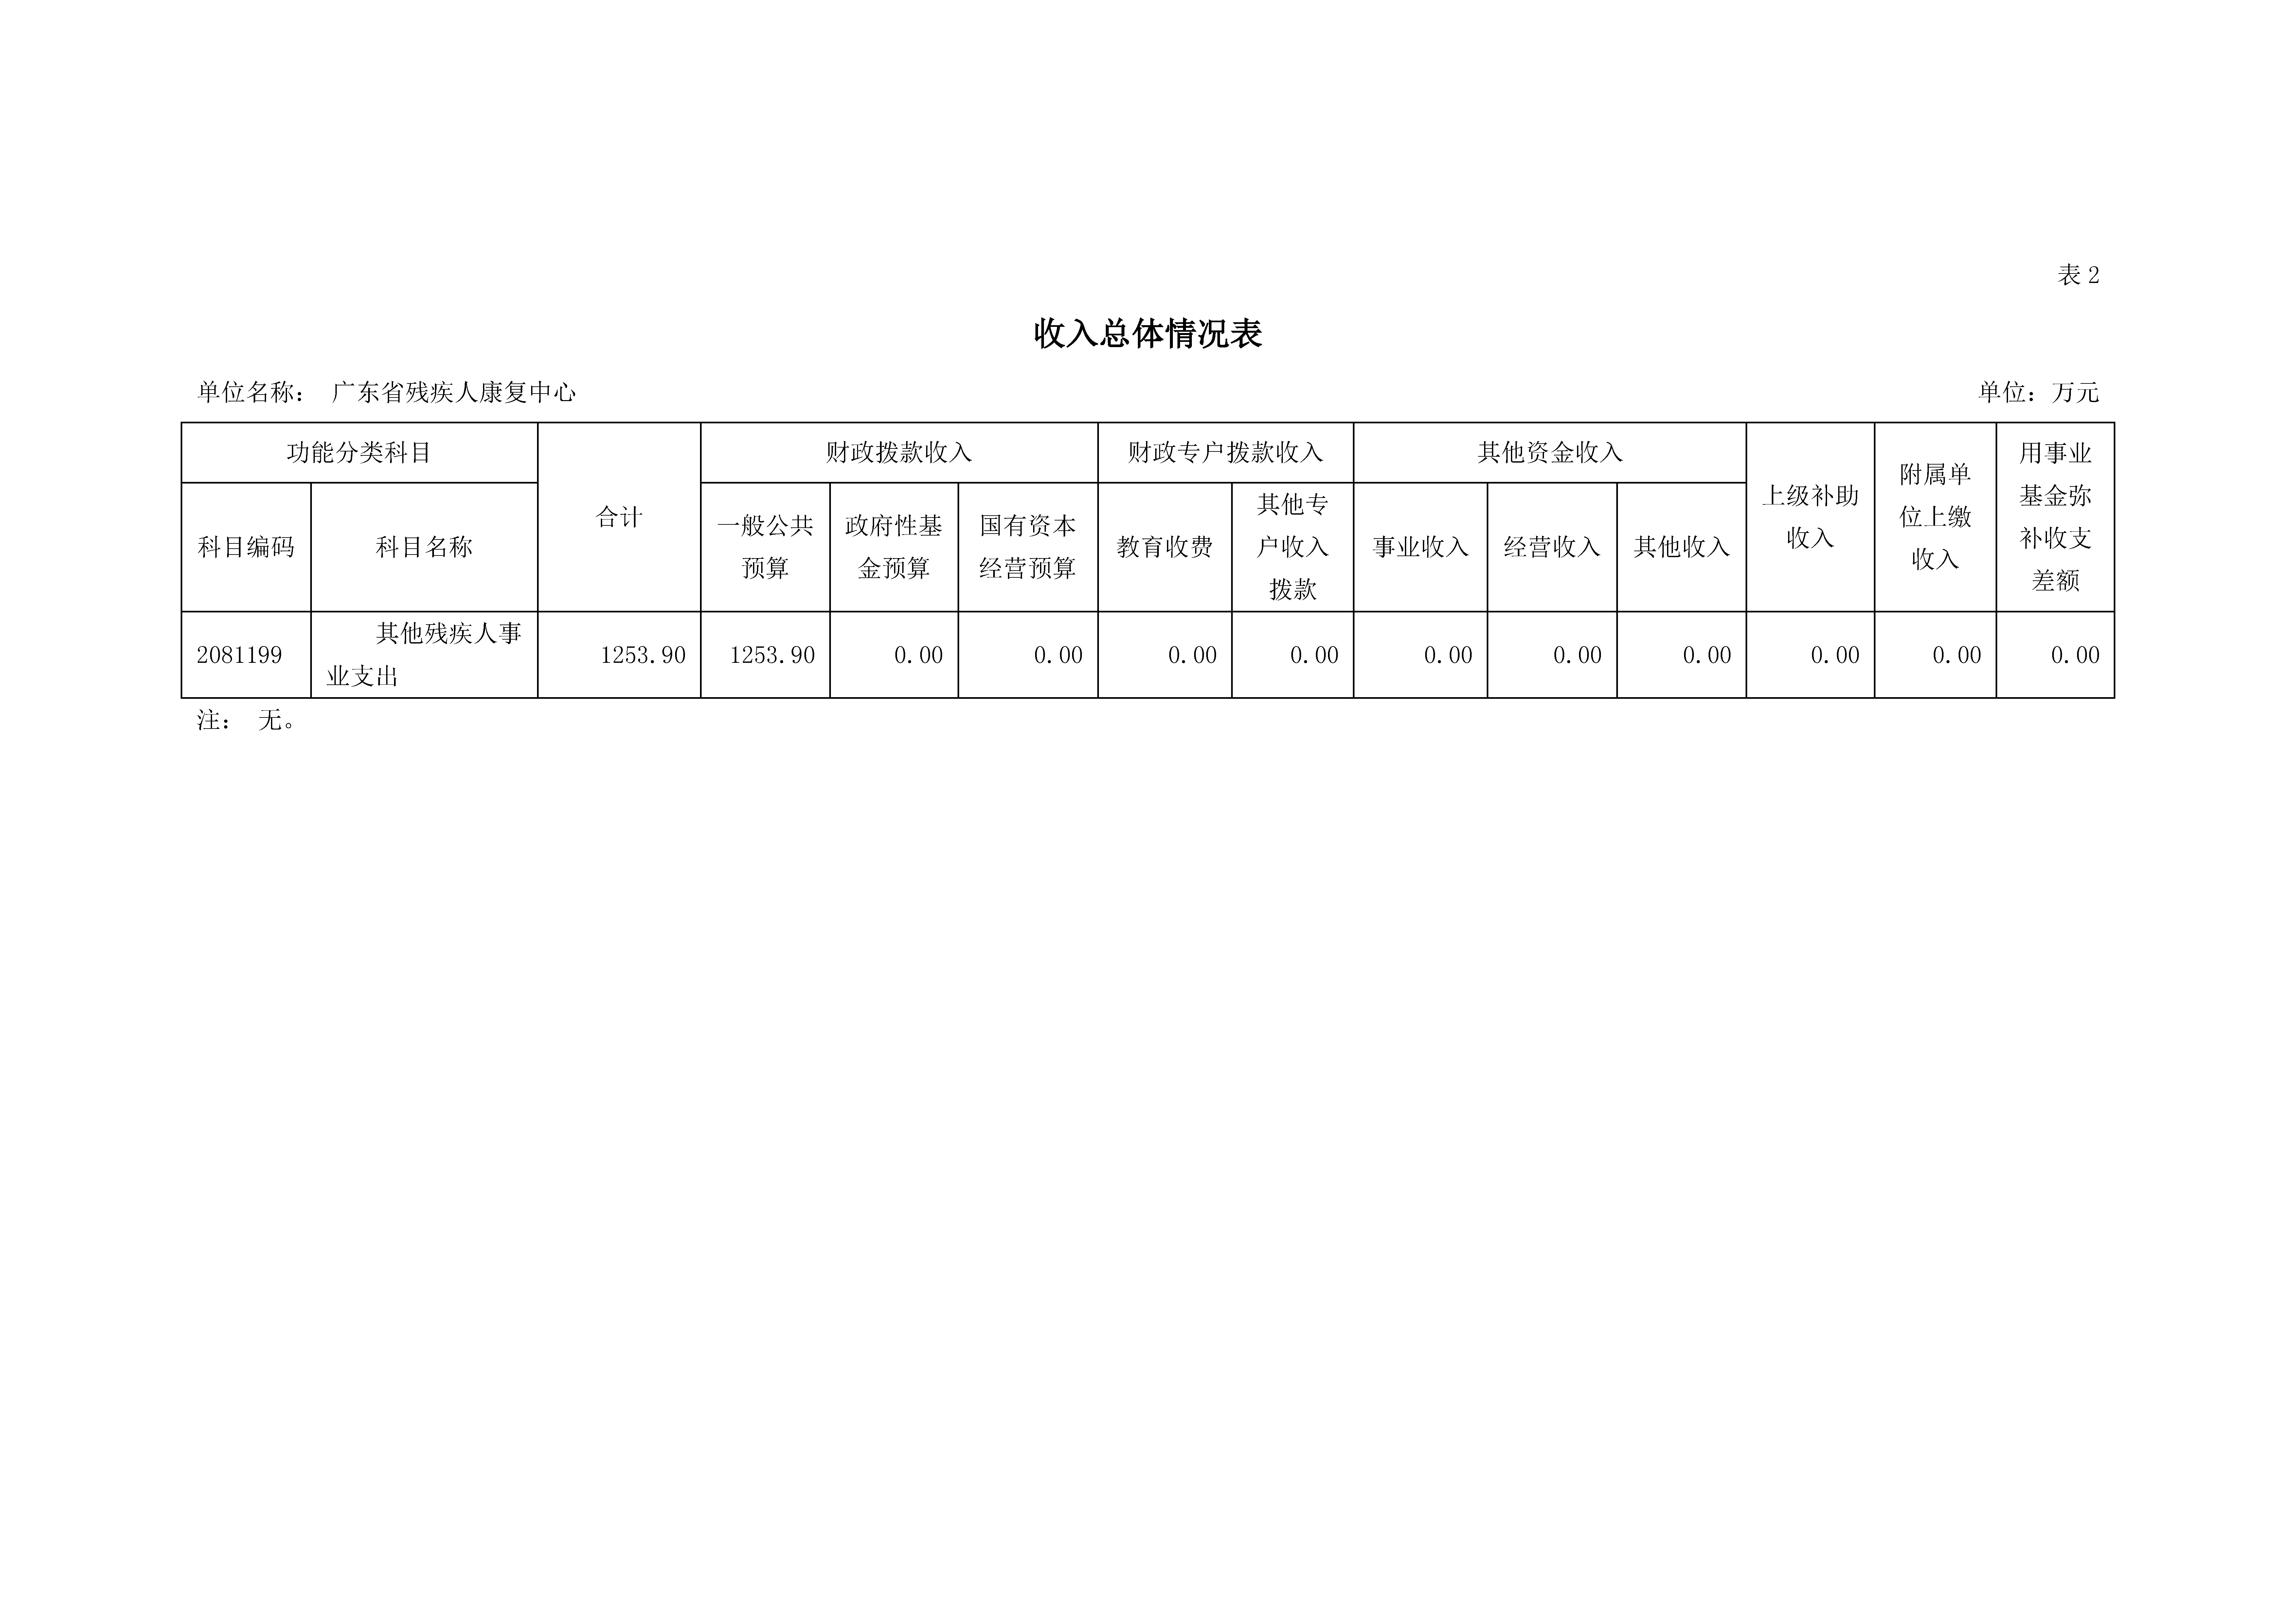 2023年广东省残疾人康复中心部门预算_页面_08.jpg